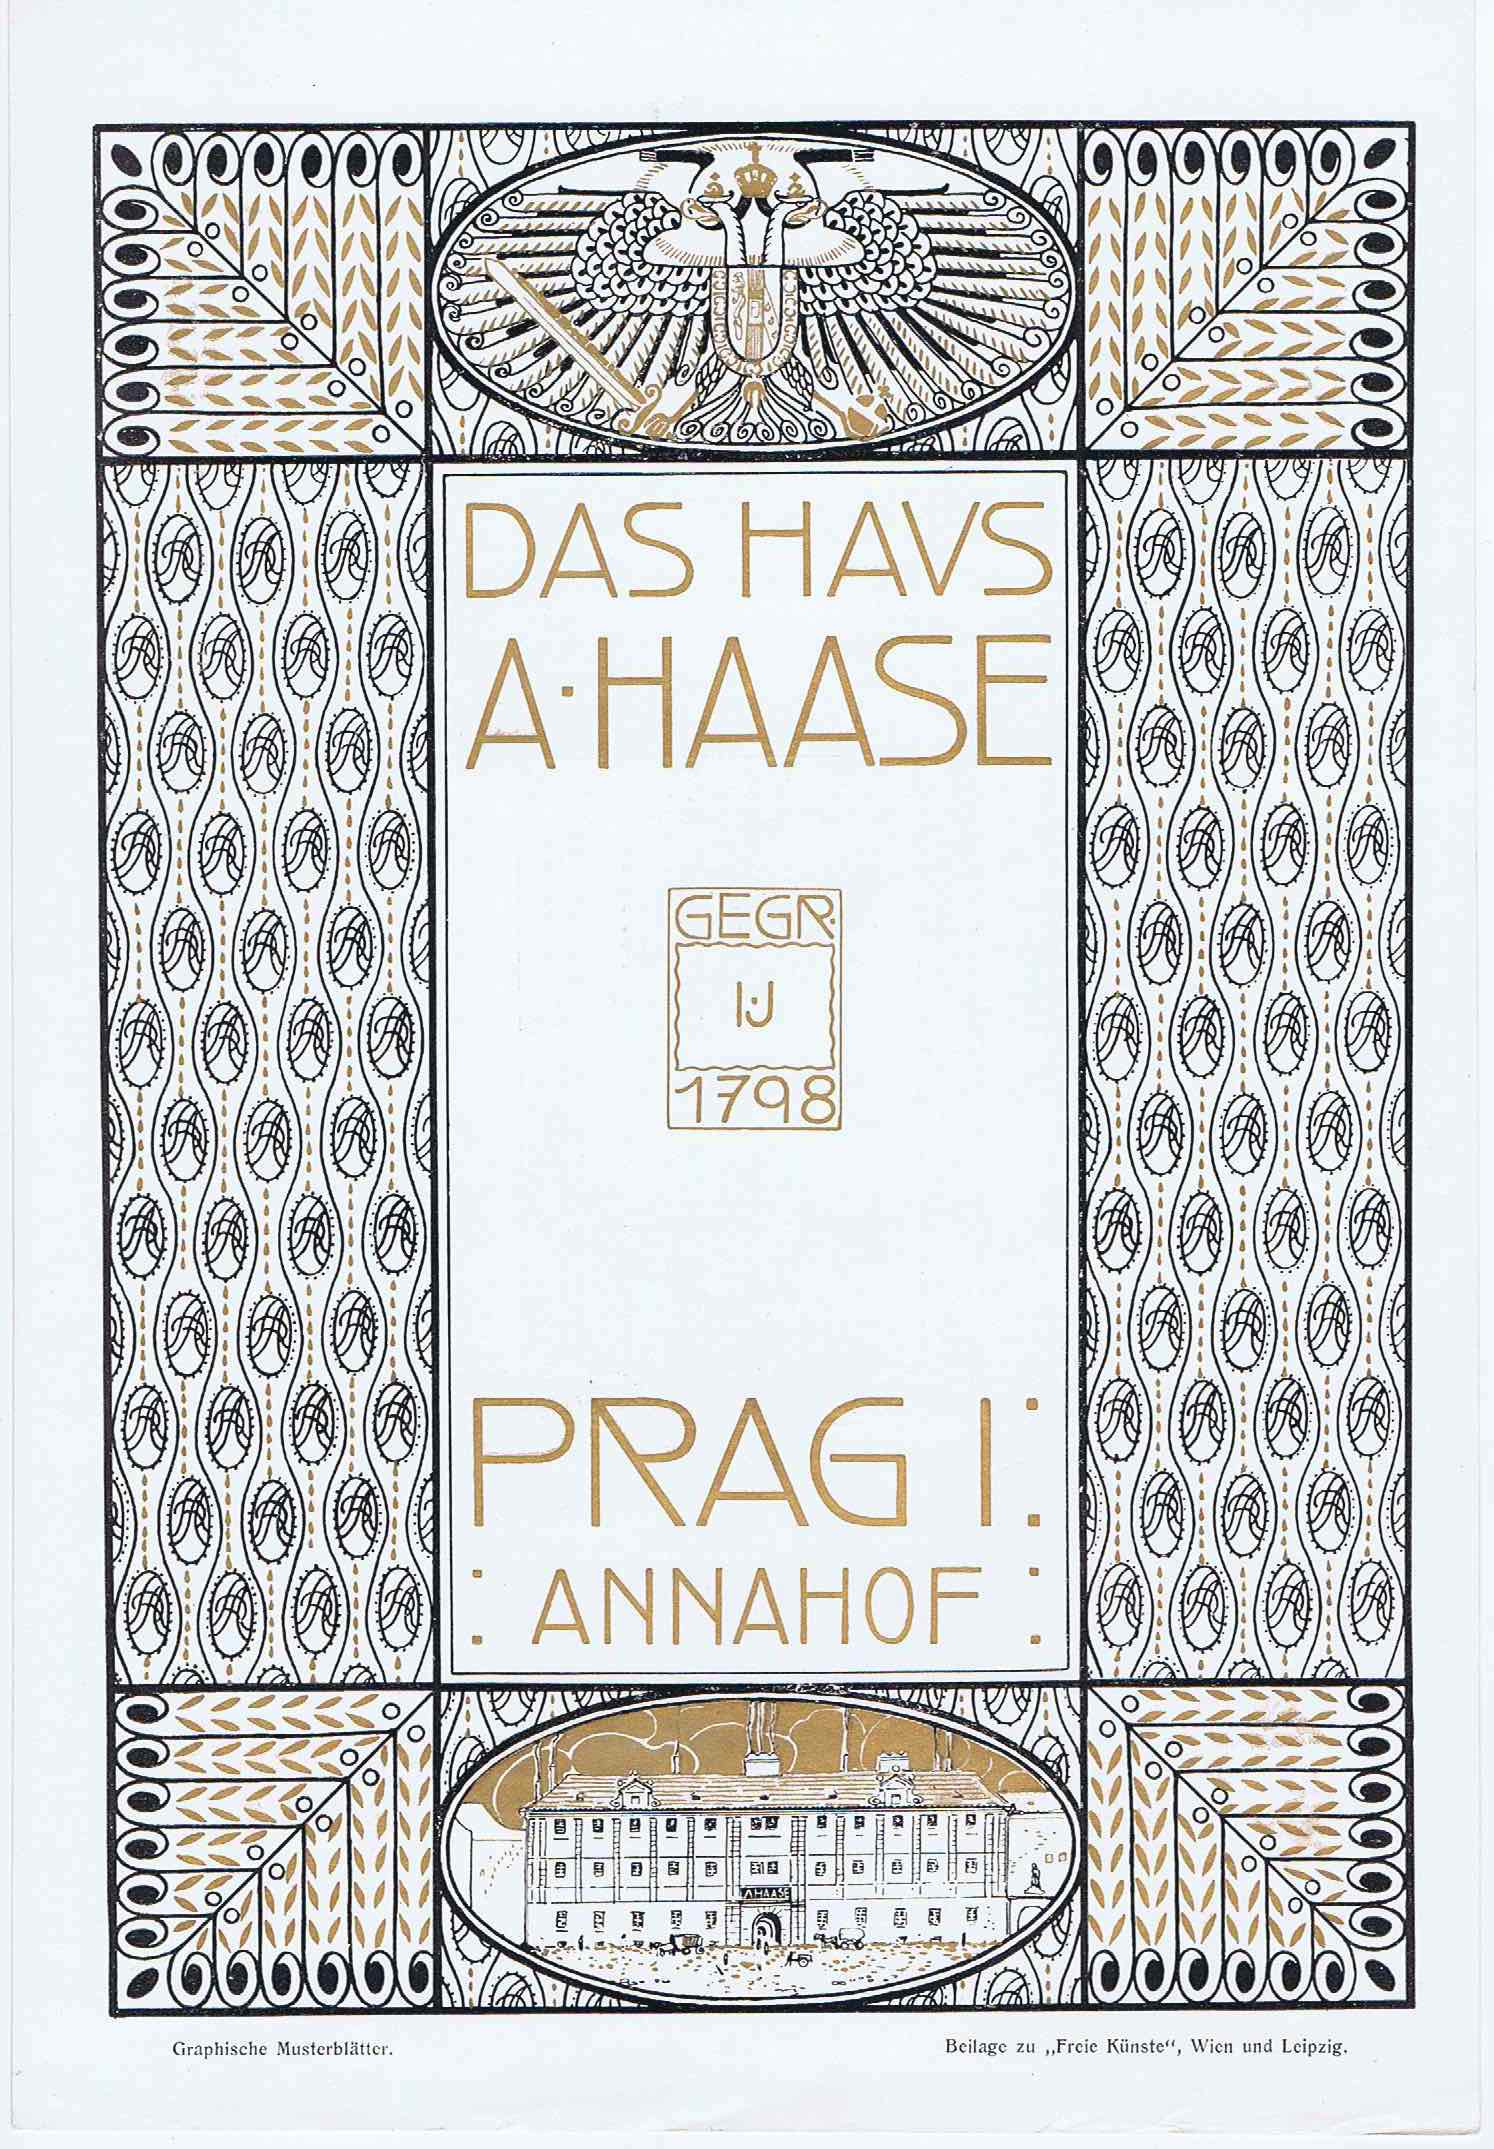 J231	DAS HAUS A HAASE - PRAGUE CA. 1900